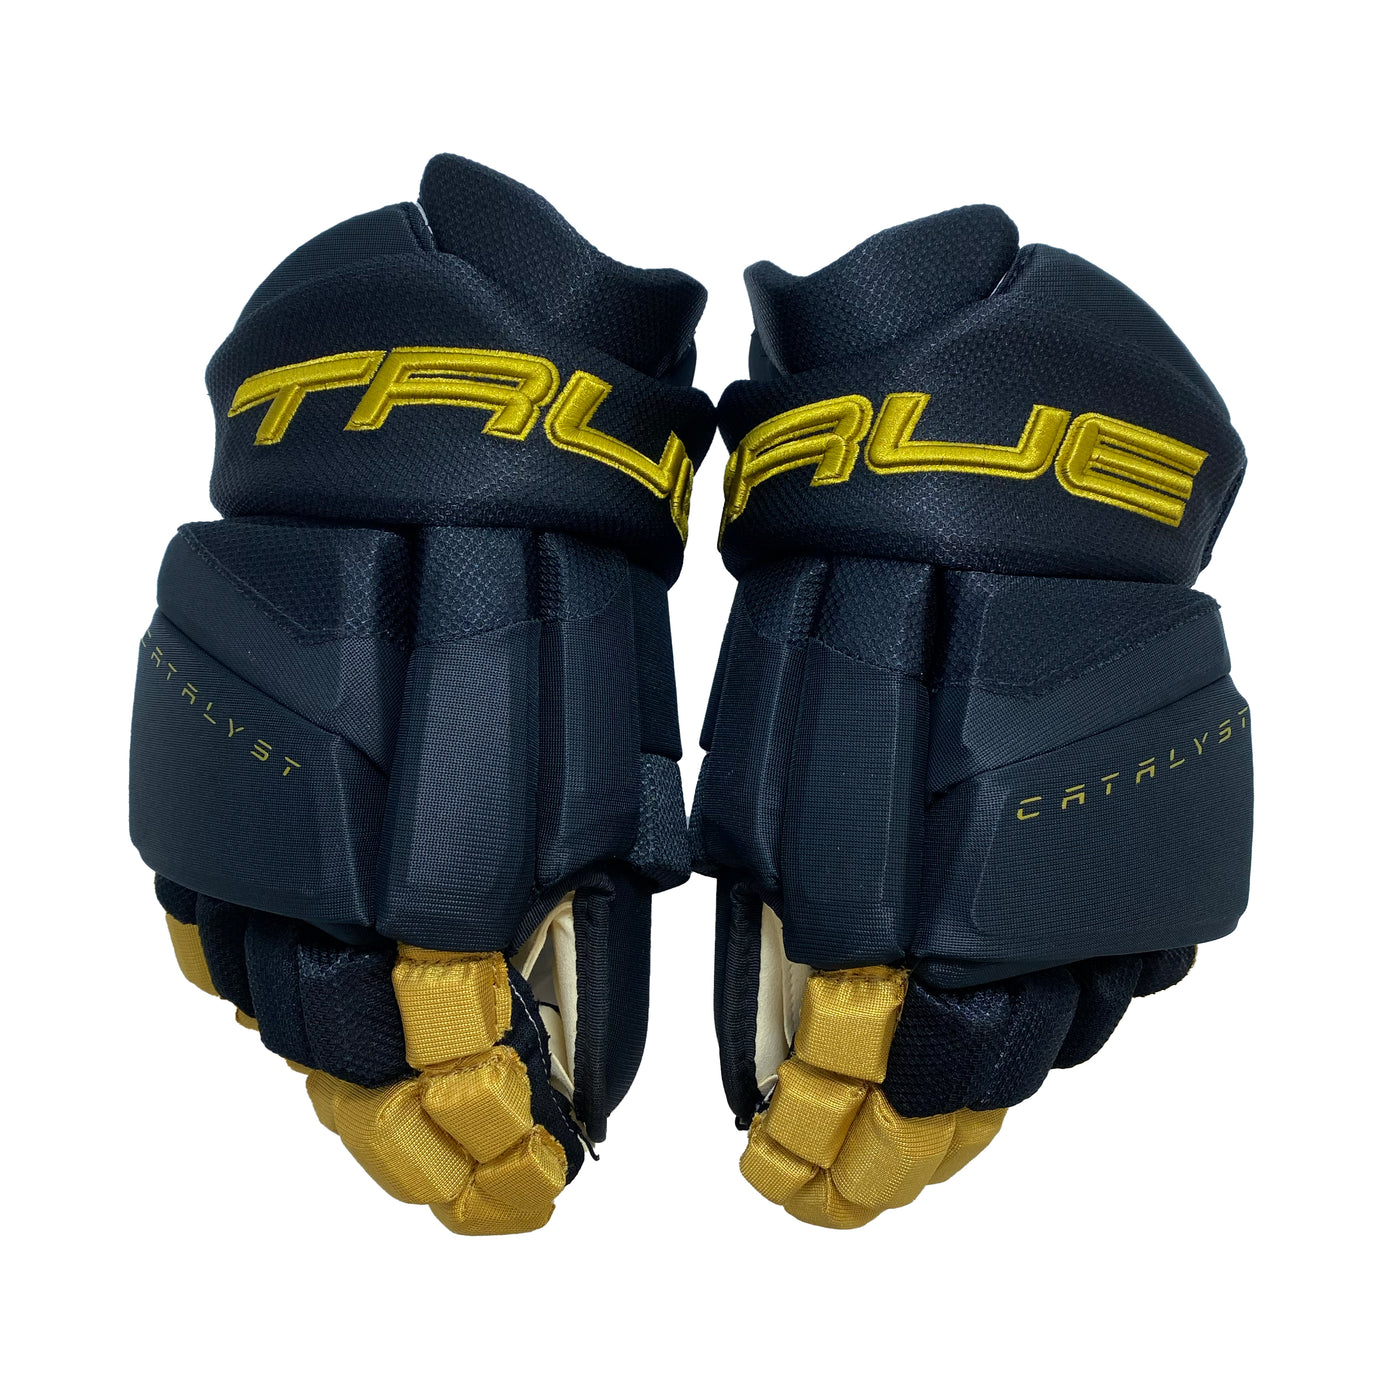 True Catalyst Pro Custom Las Vegas Golden Knights Hockey Gloves - Home